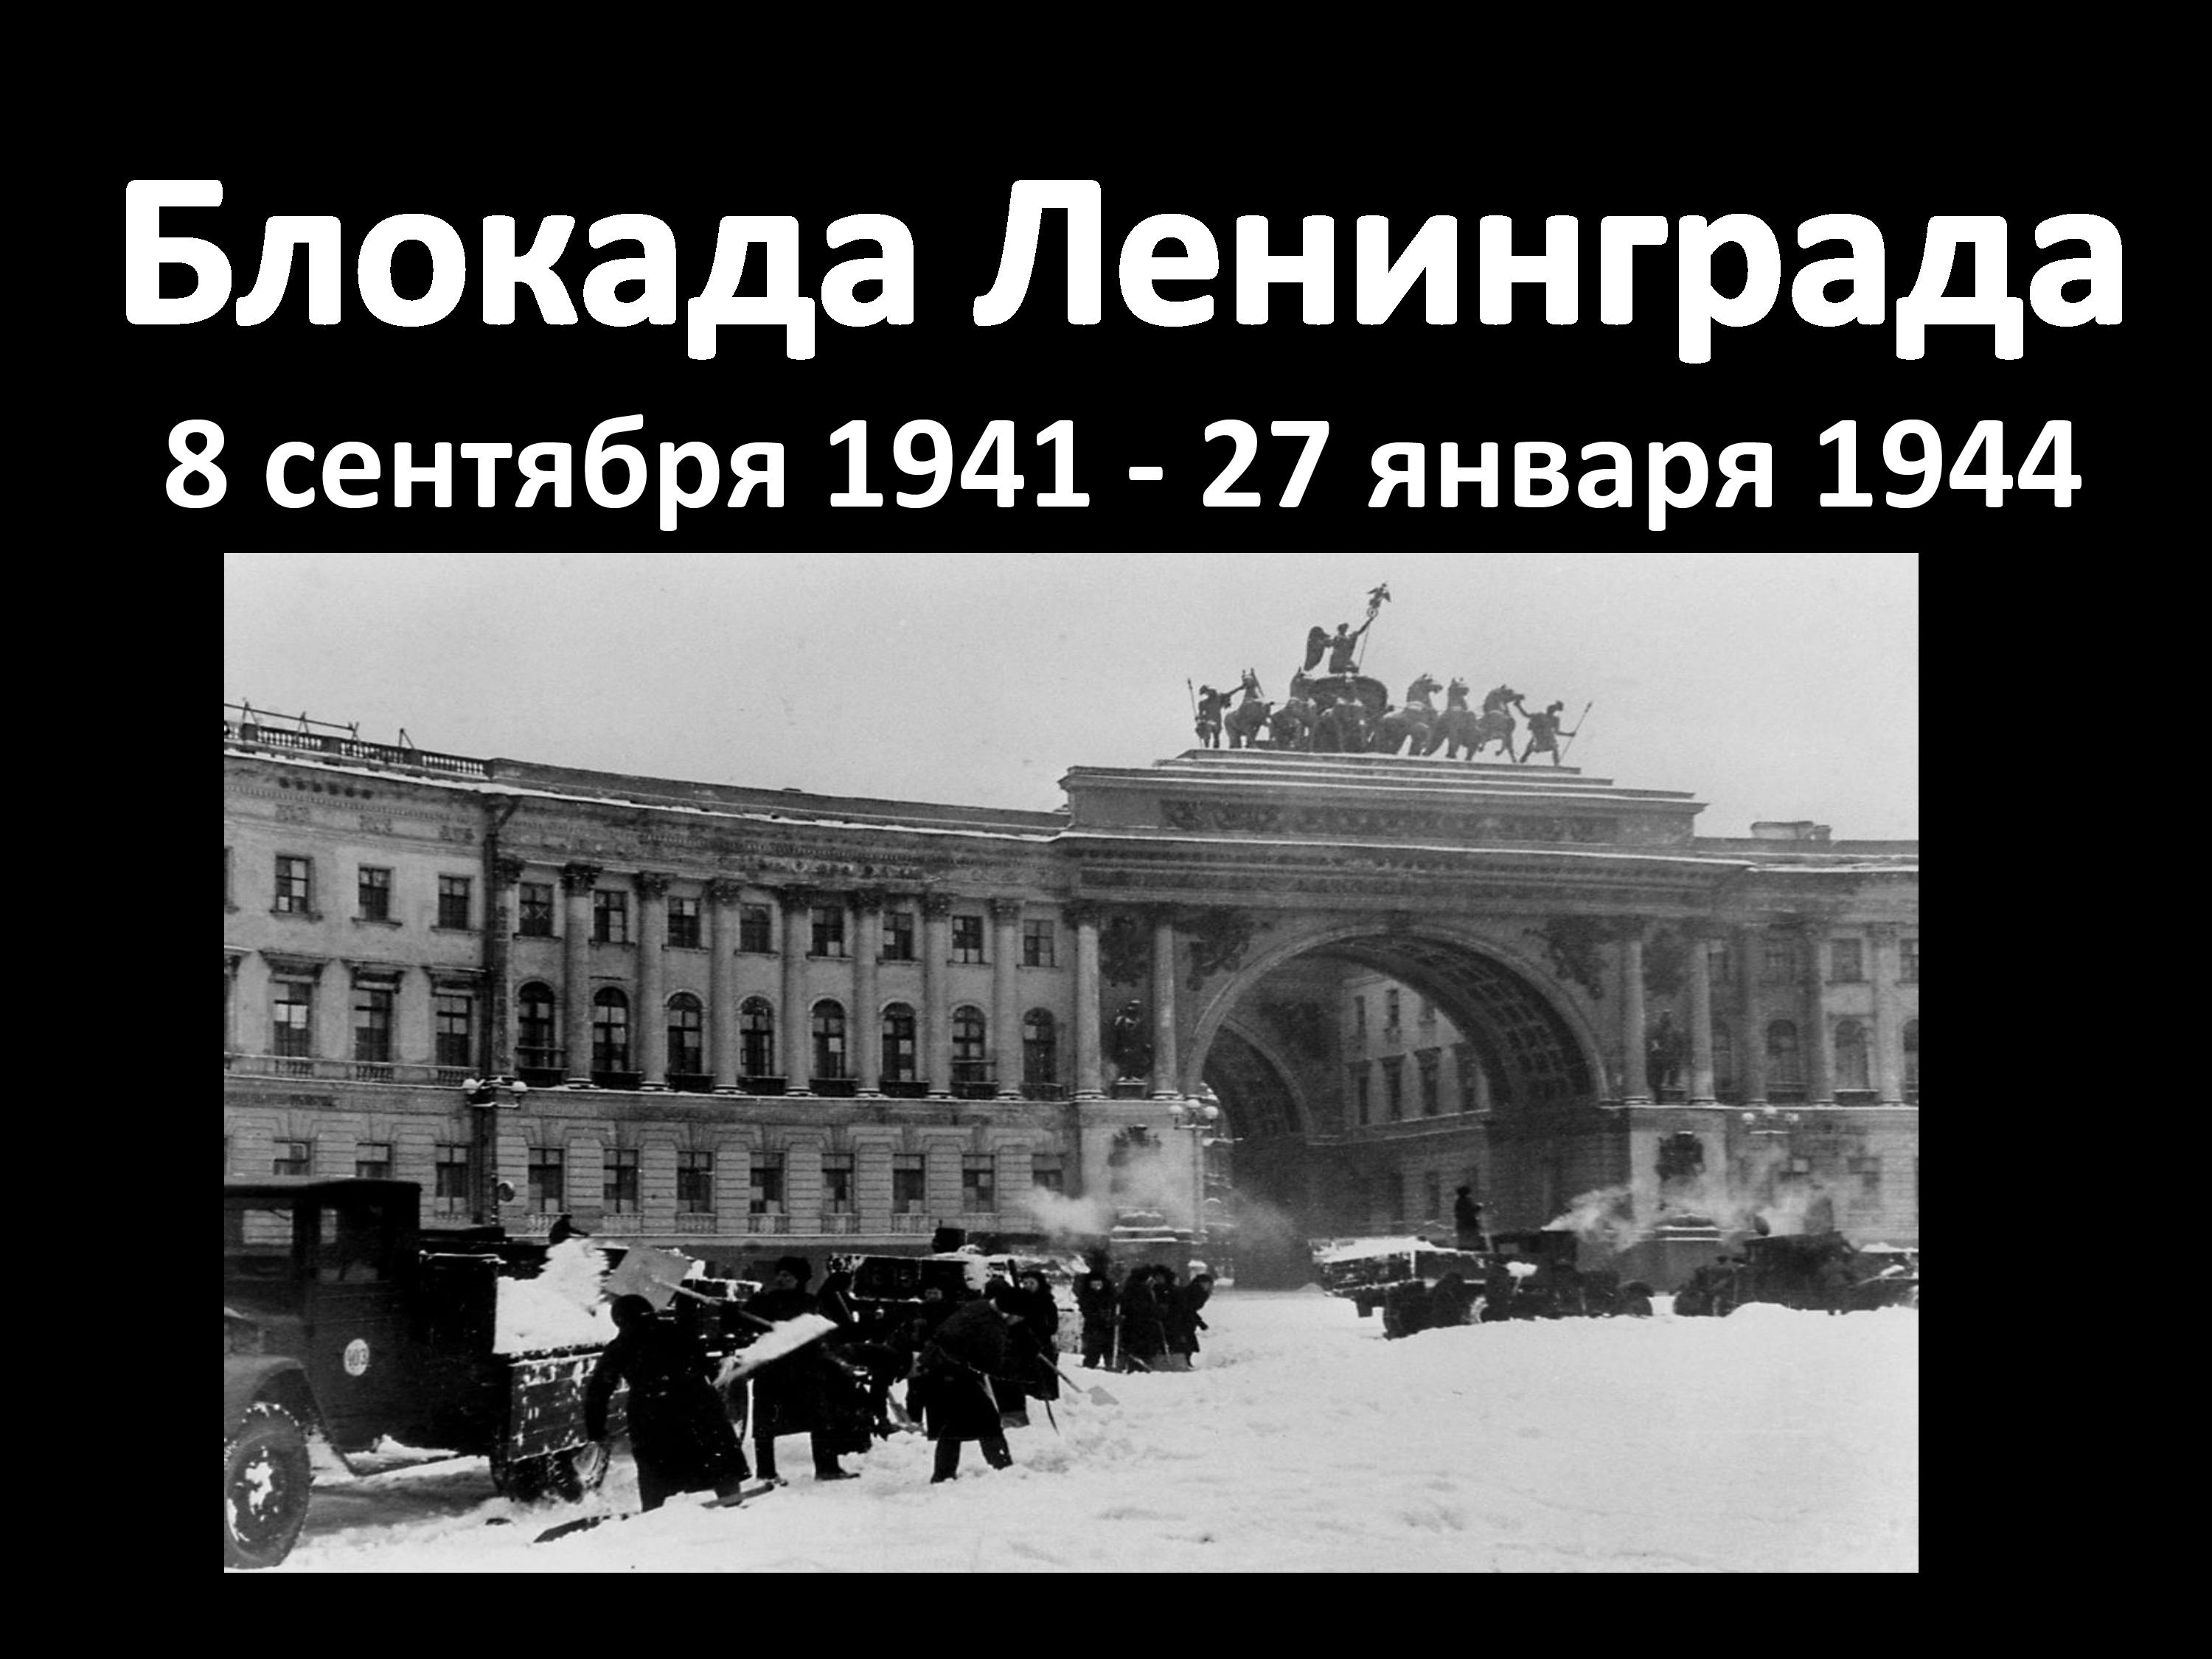 Ленинград - город-герой!.